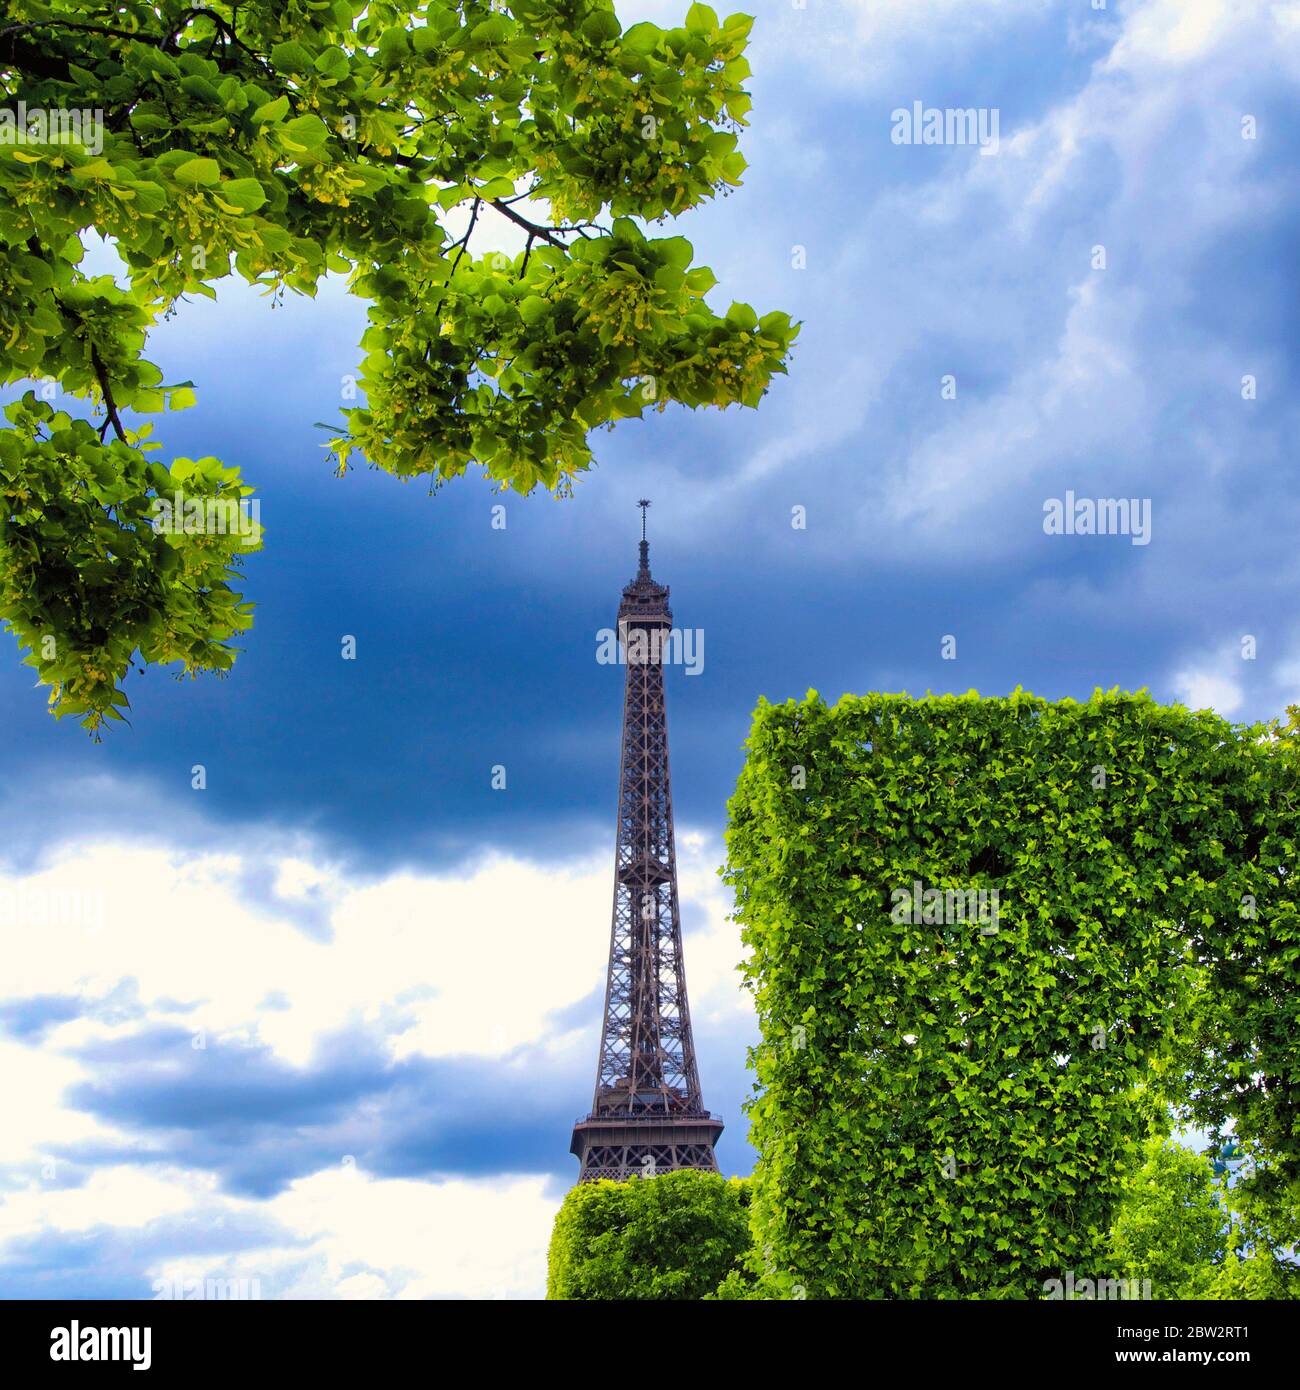 Torre Eiffel tour Eiffel di Parigi e dell' Ile-de-France, Francia Foto Stock